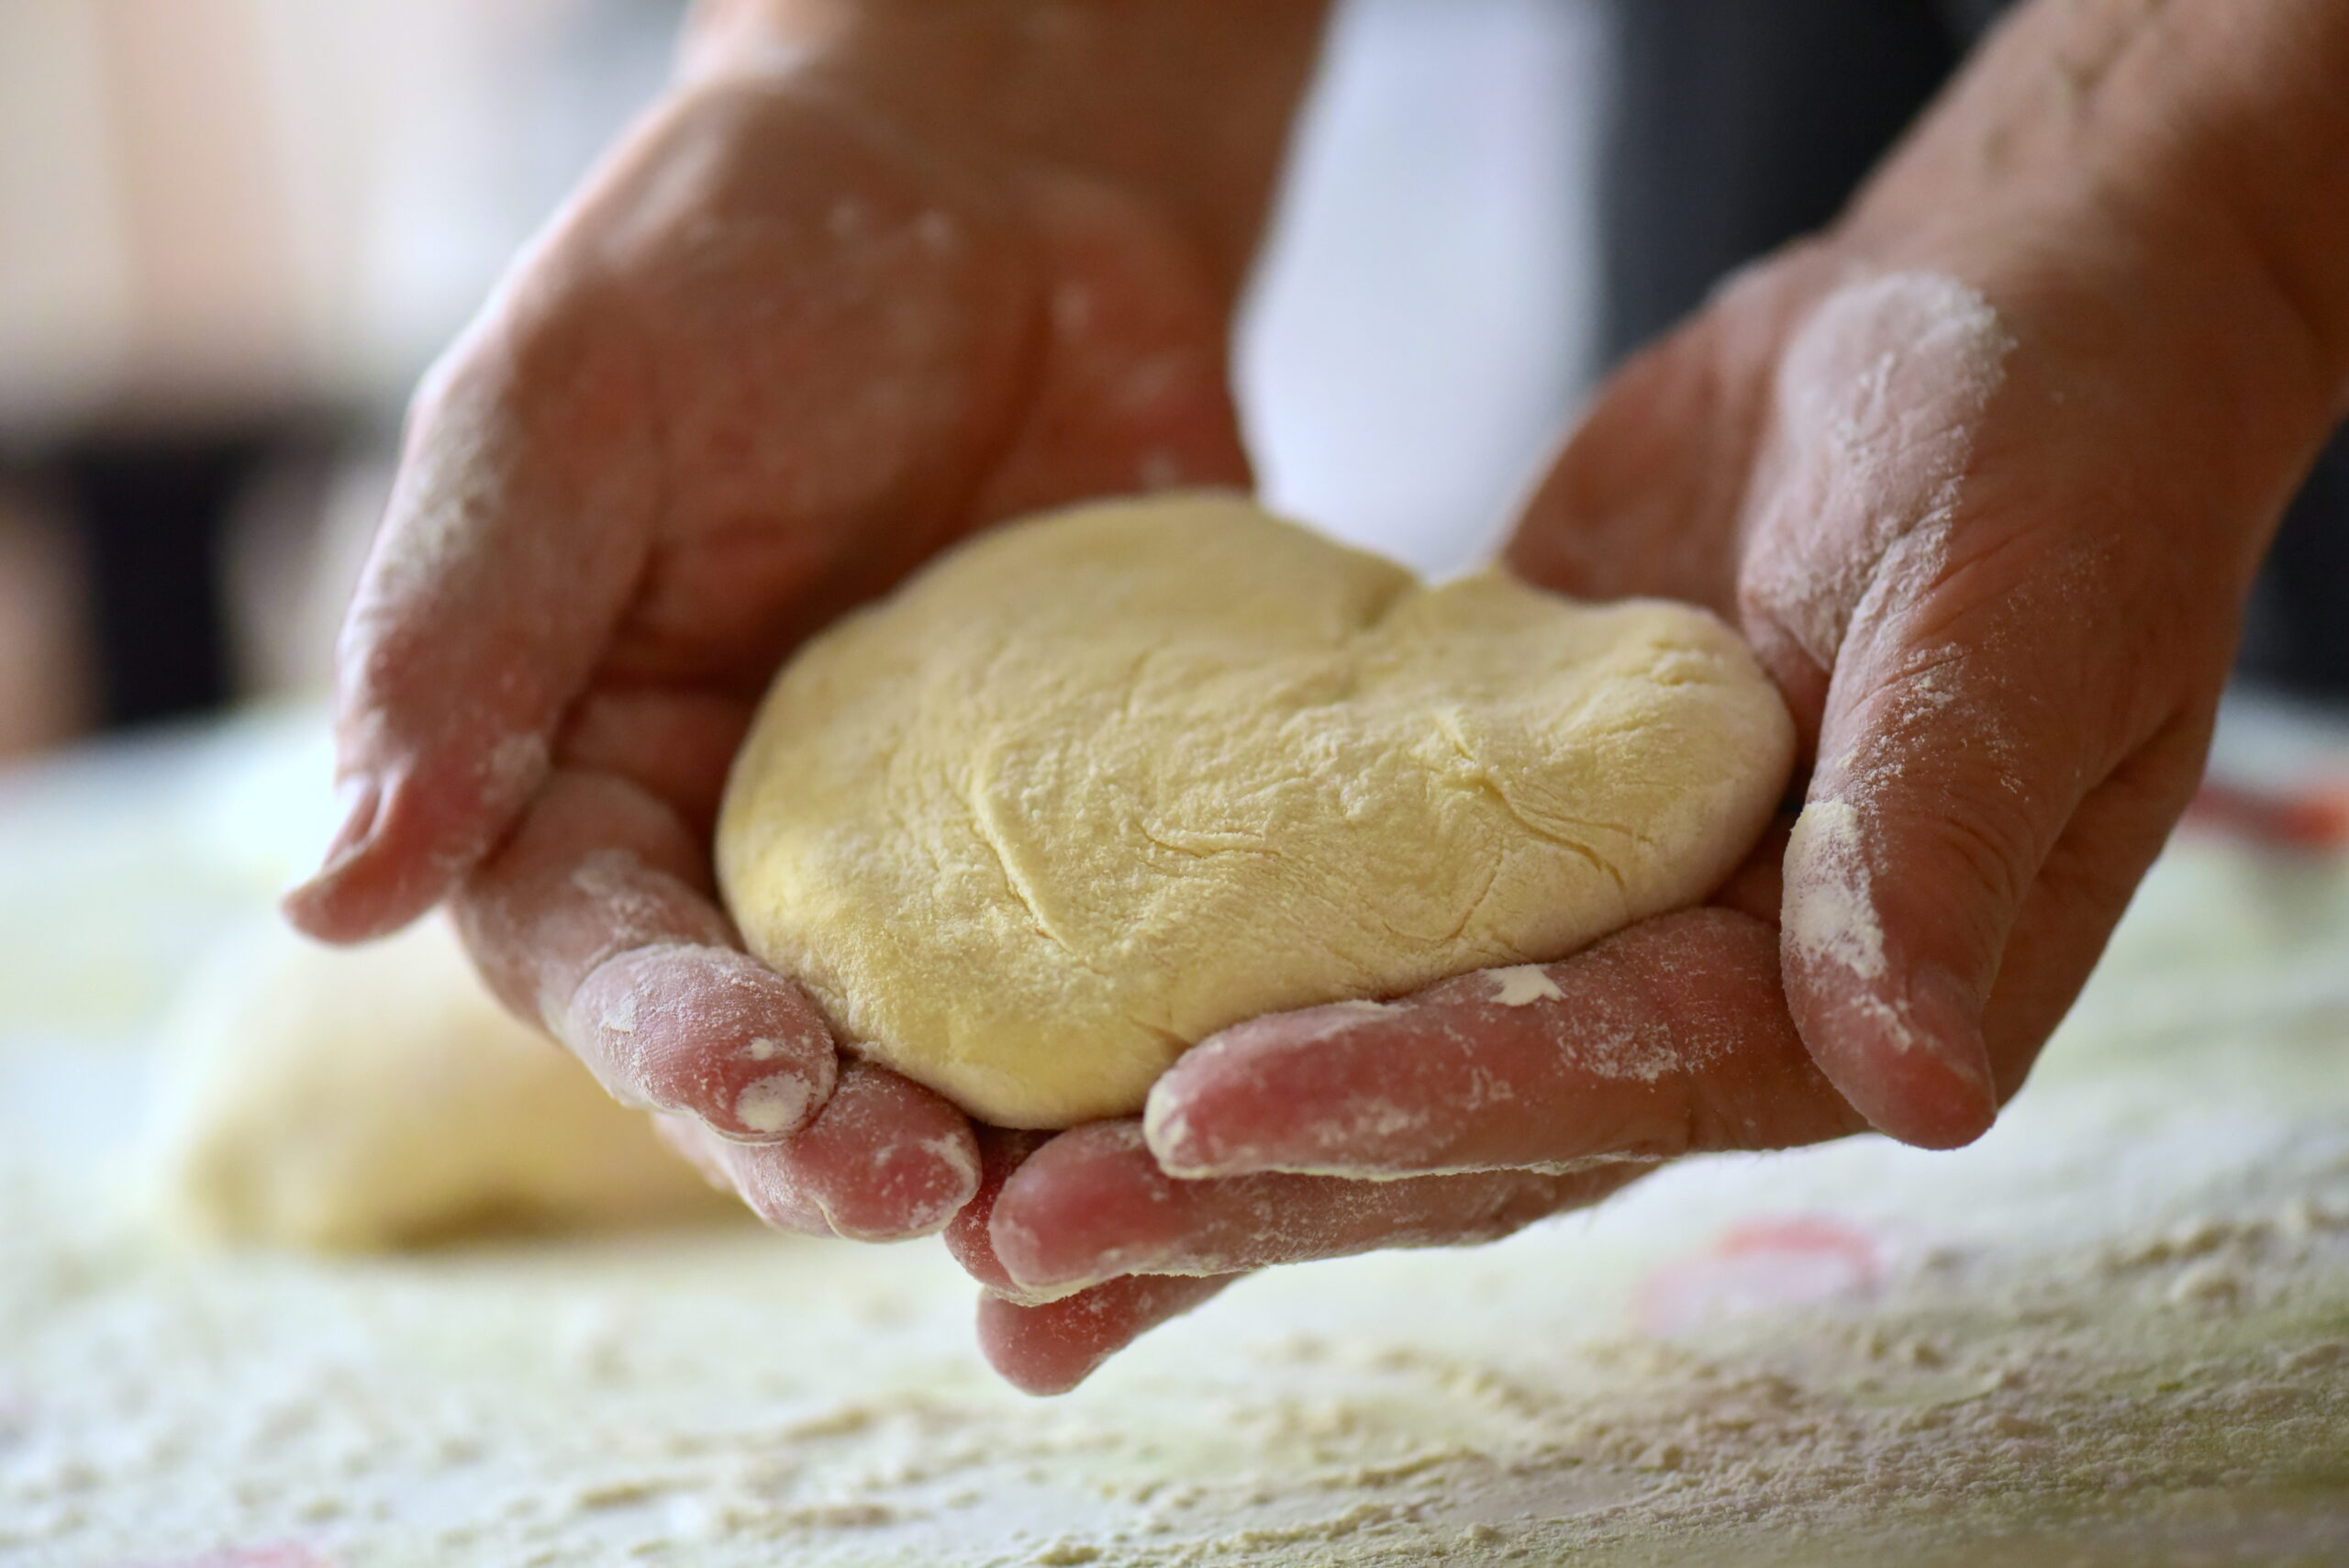 bakers hands knead dough